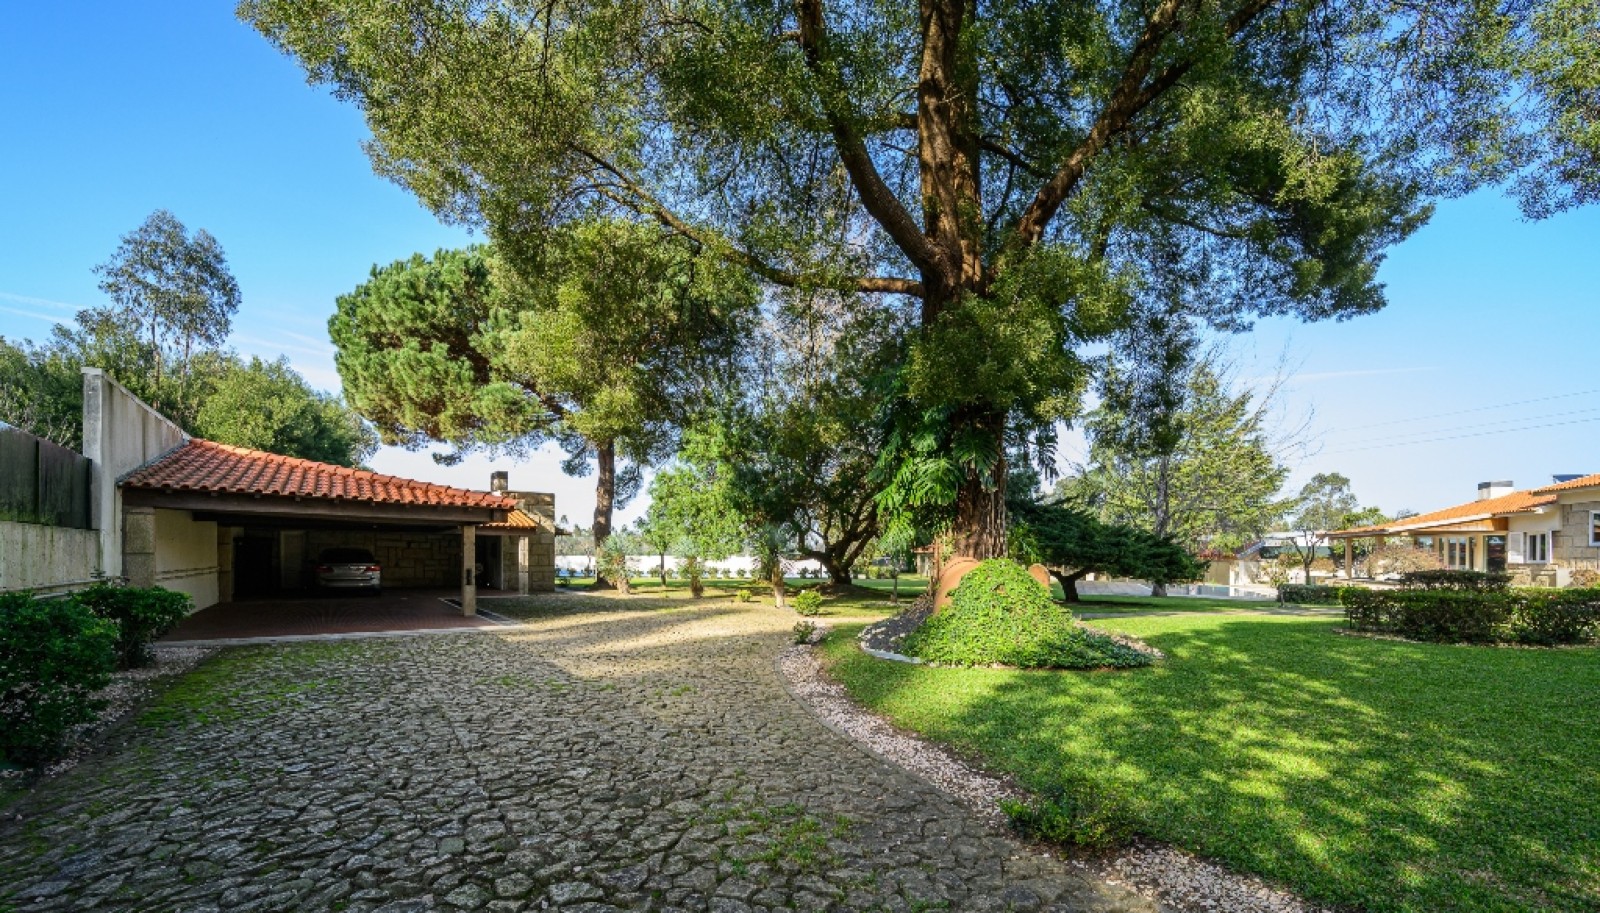 Moradia V5 com jardim e piscina, à venda, em Vila do Conde, Portugal_251095